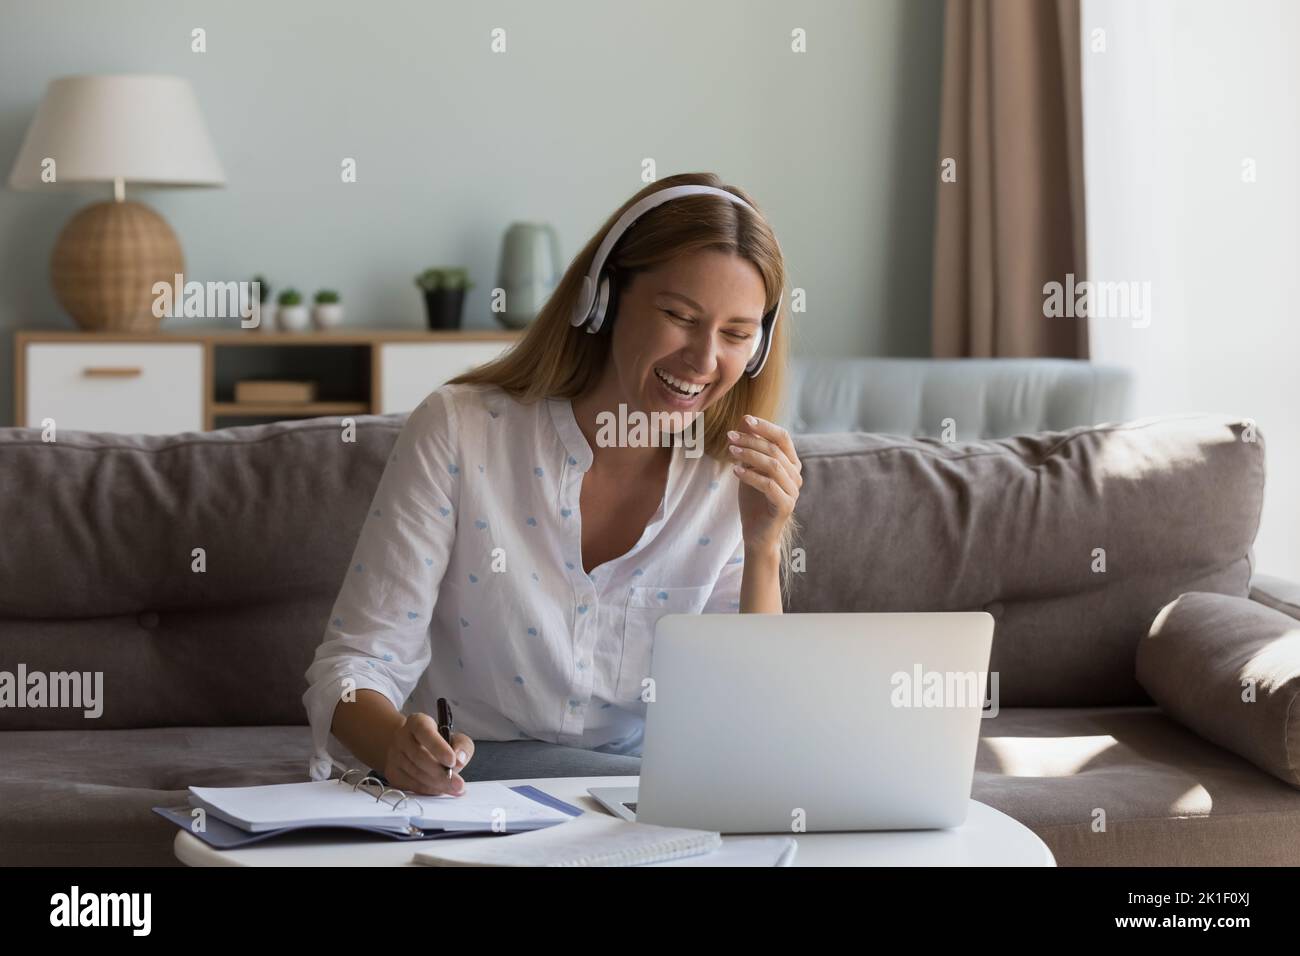 Bonne joyeuse femme dans un casque sans fil parlant lors d'un appel vidéo Banque D'Images